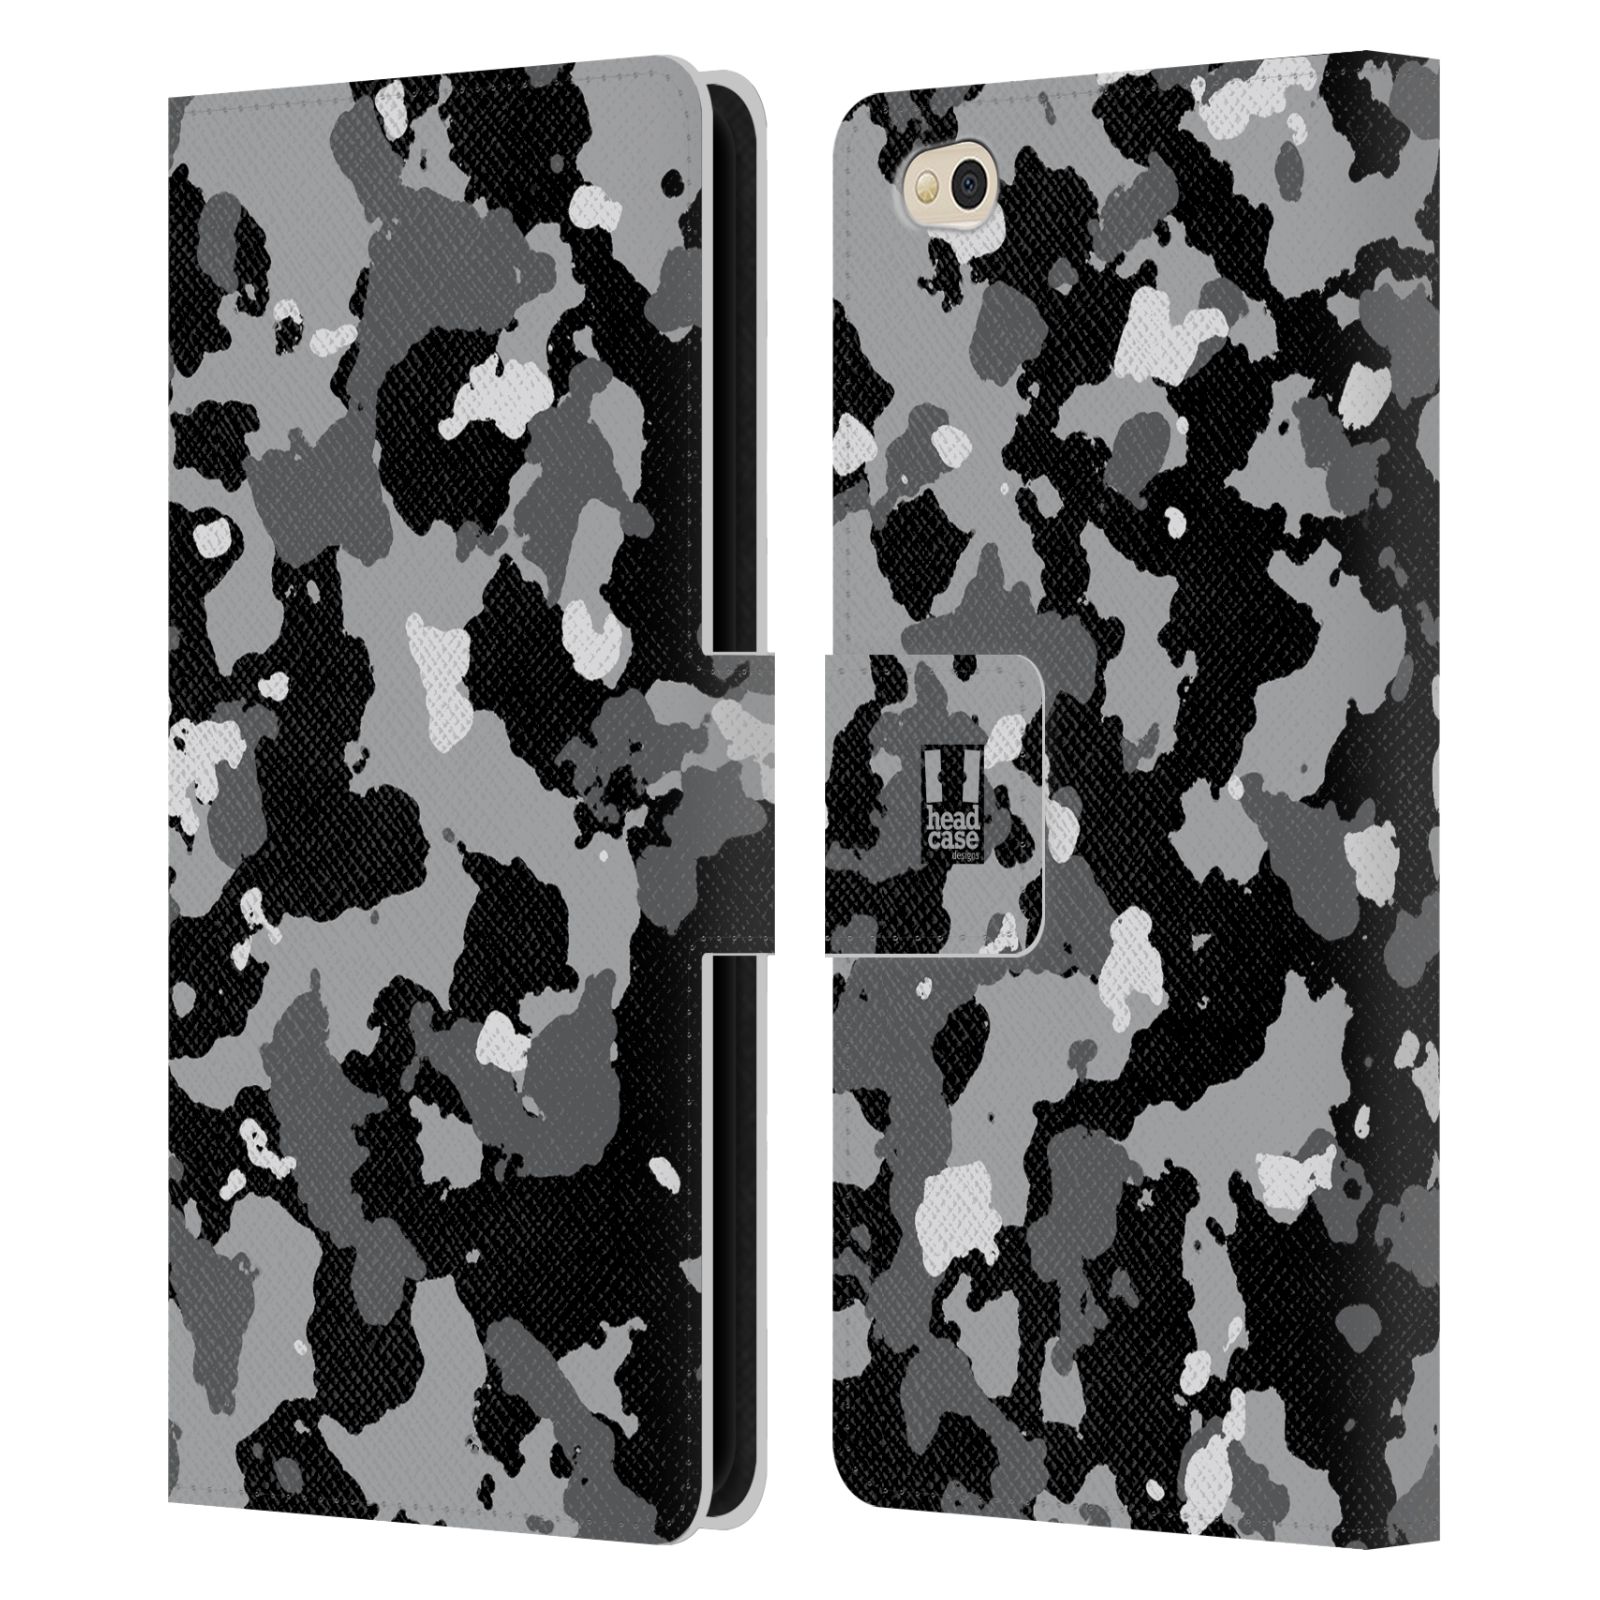 Pouzdro na mobil Xiaomi Mi 5c - Head Case - kamuflaž černá a šedá